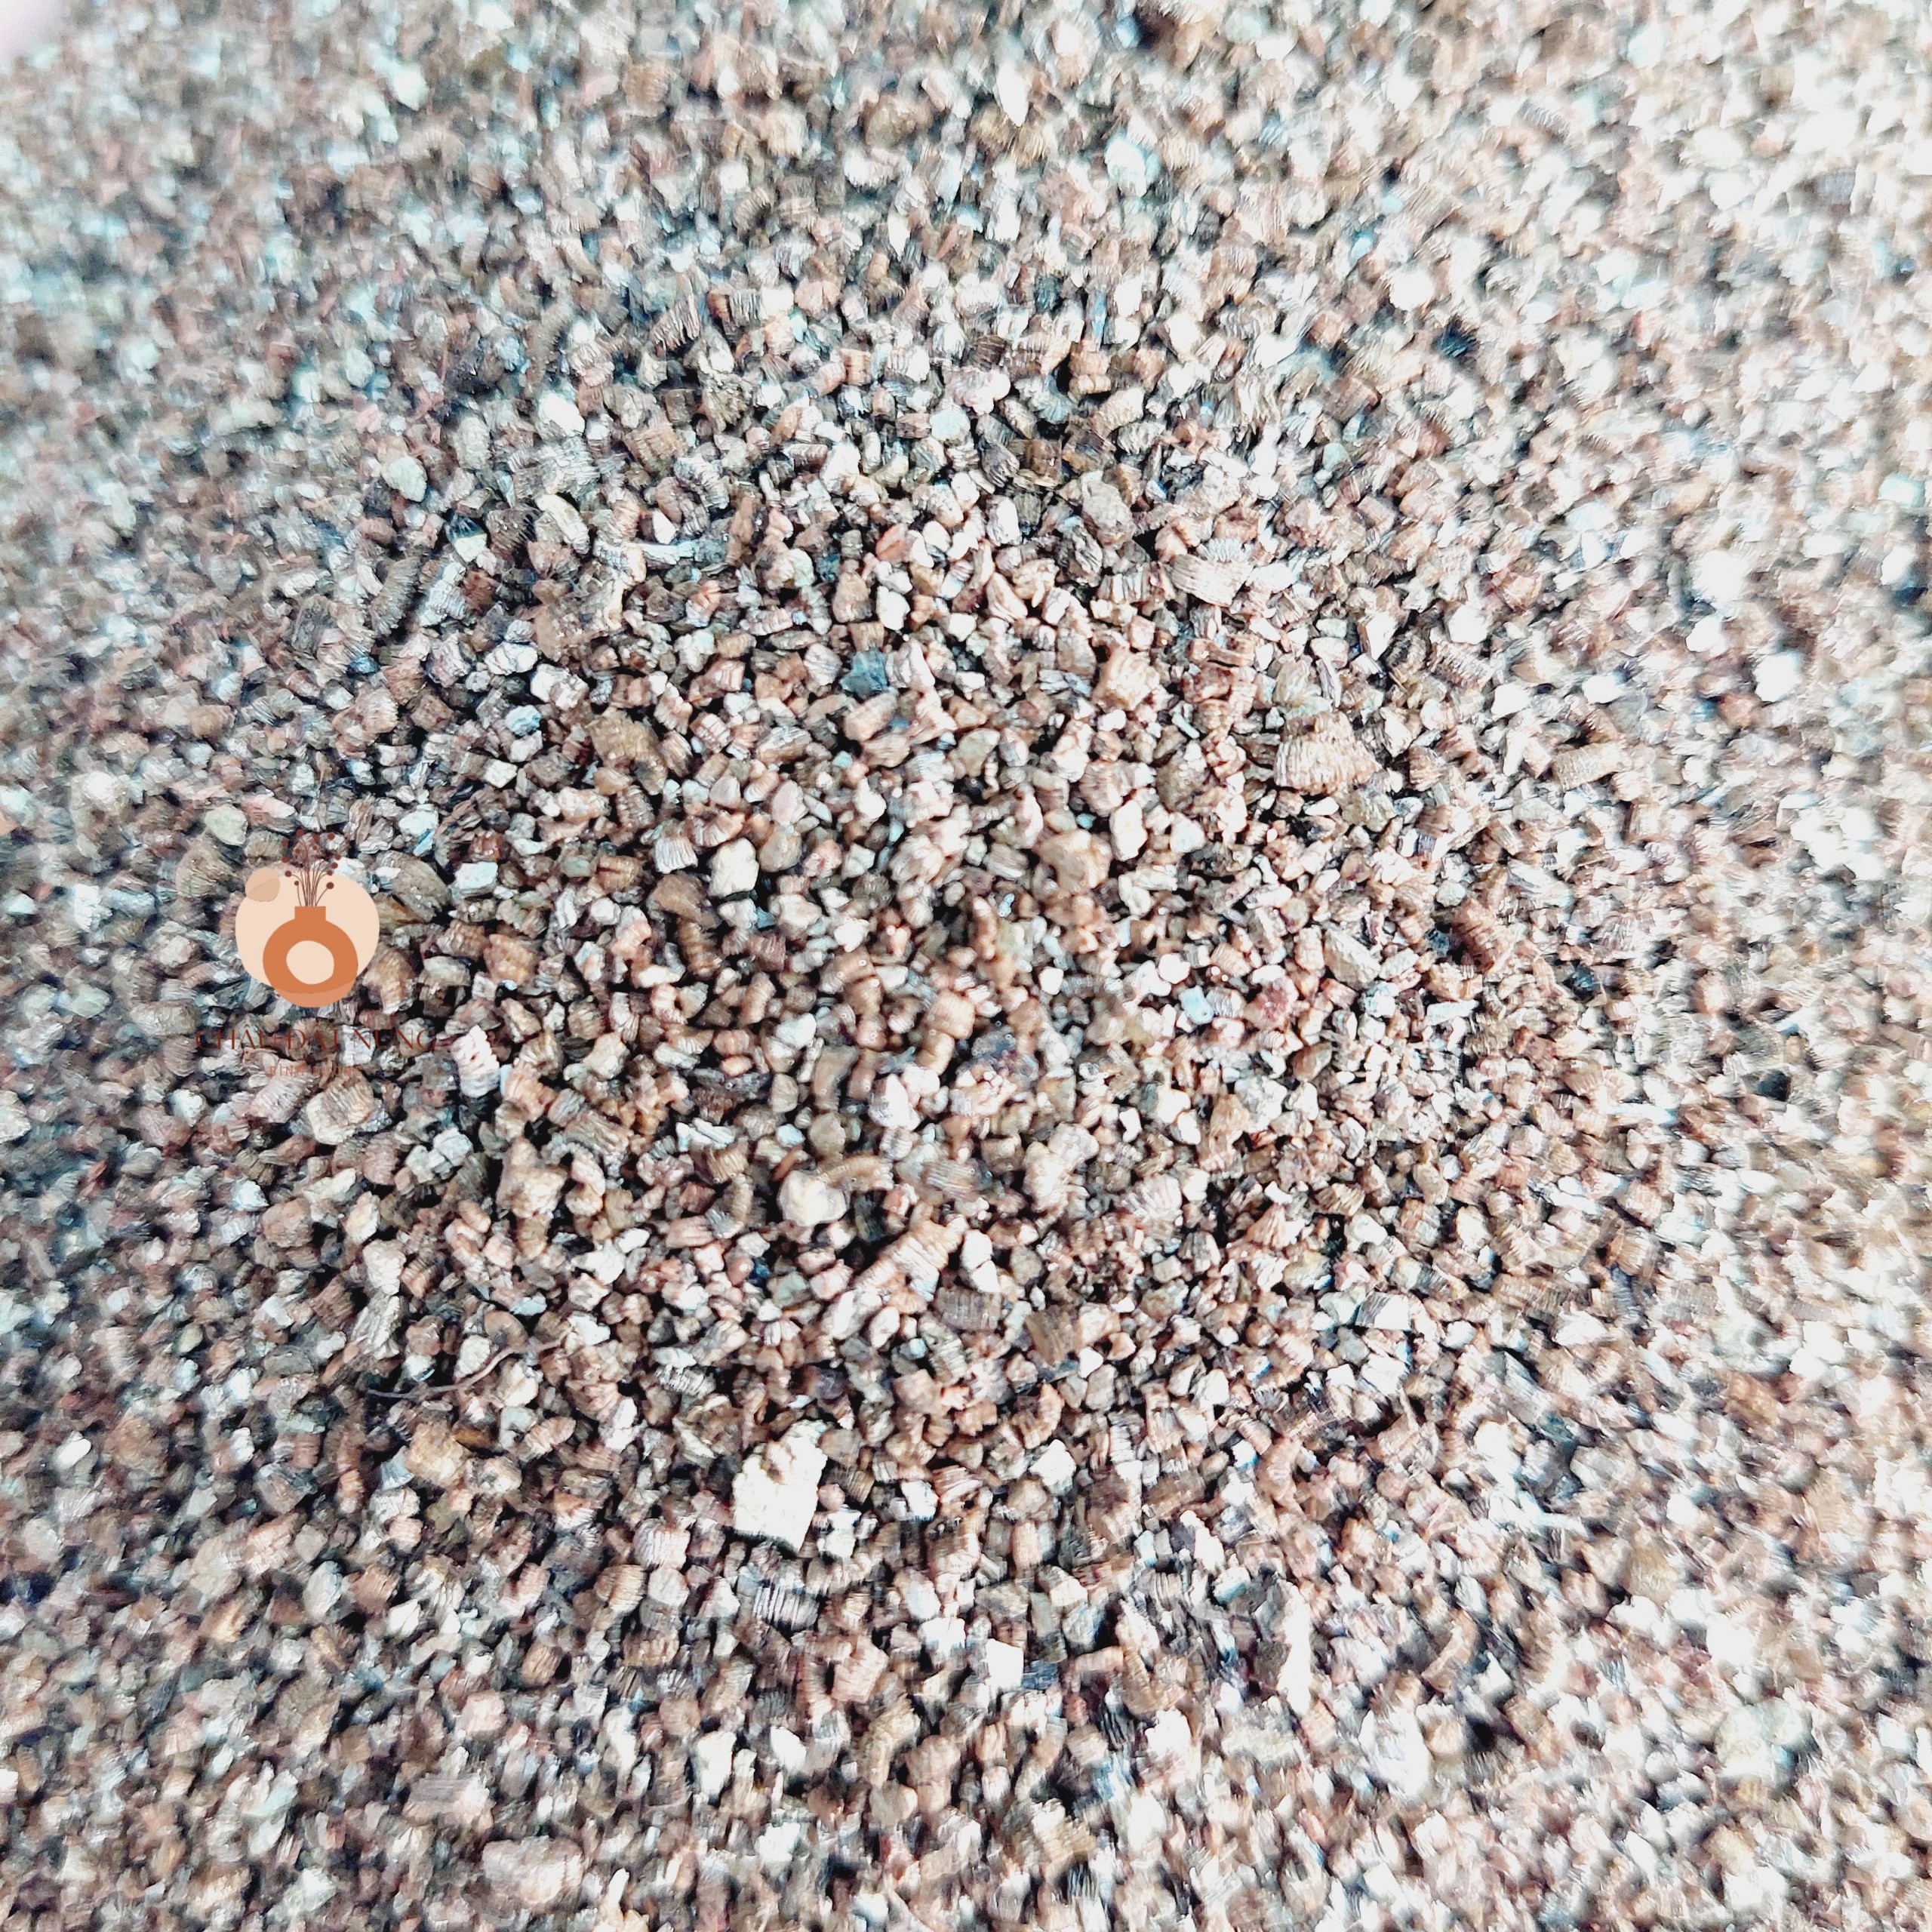 [100gram] Đá Vermiculite size 2-4mm, điều hòa độ ẩm - kích thích ra rễ - 100gram